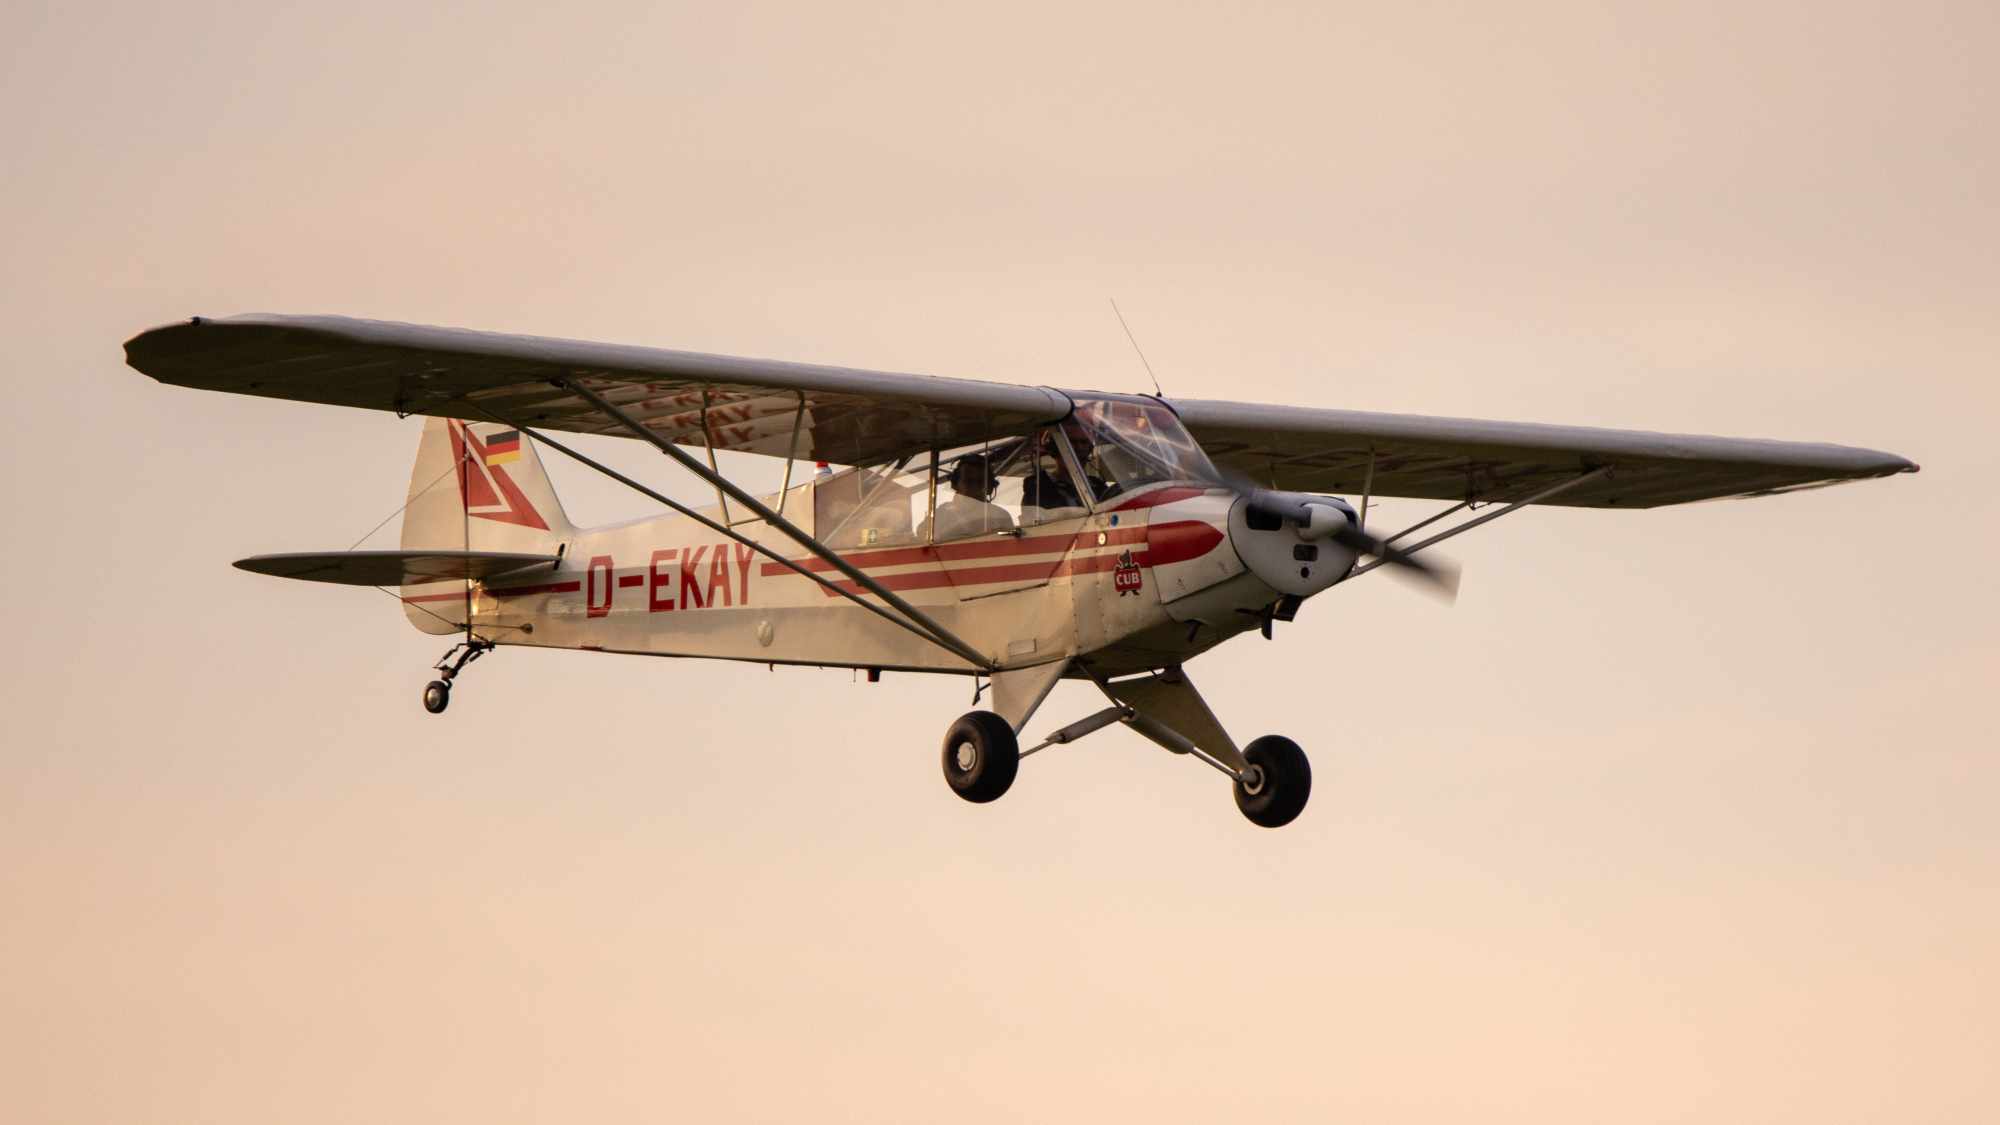 D-EKAY - Piper PA-18 Super Cub